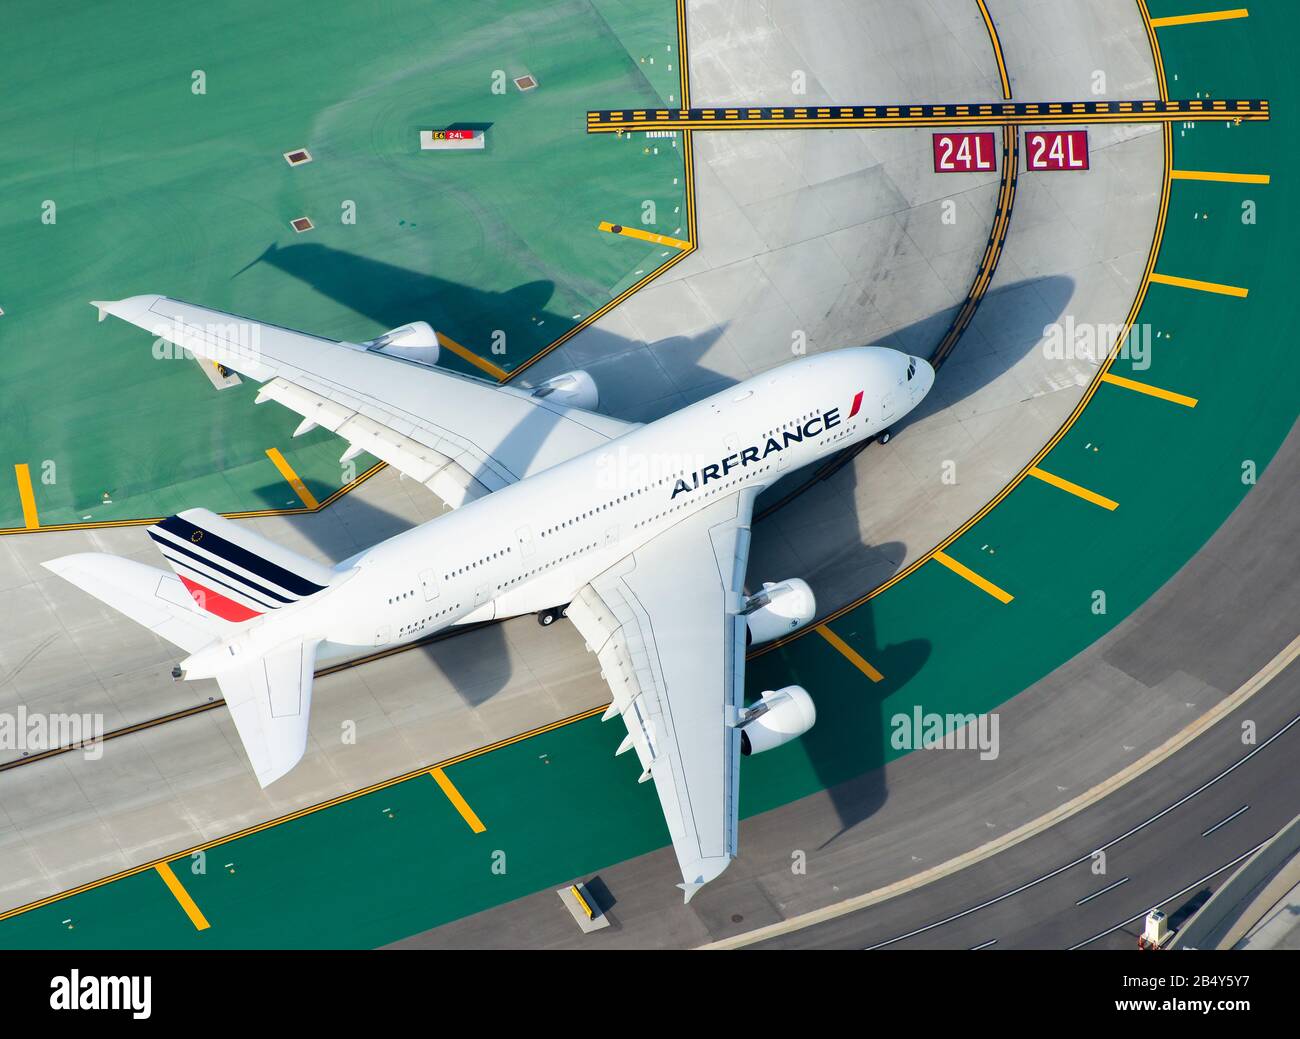 Luftbild der Air France Airbus A380-800 ist als F-HPJA registriert und verfügt über bunte Taxiweg-Markierungen und -Linien auf dem internationalen Flughafen. Flugzeug, das in die Landebahn eindringt Stockfoto